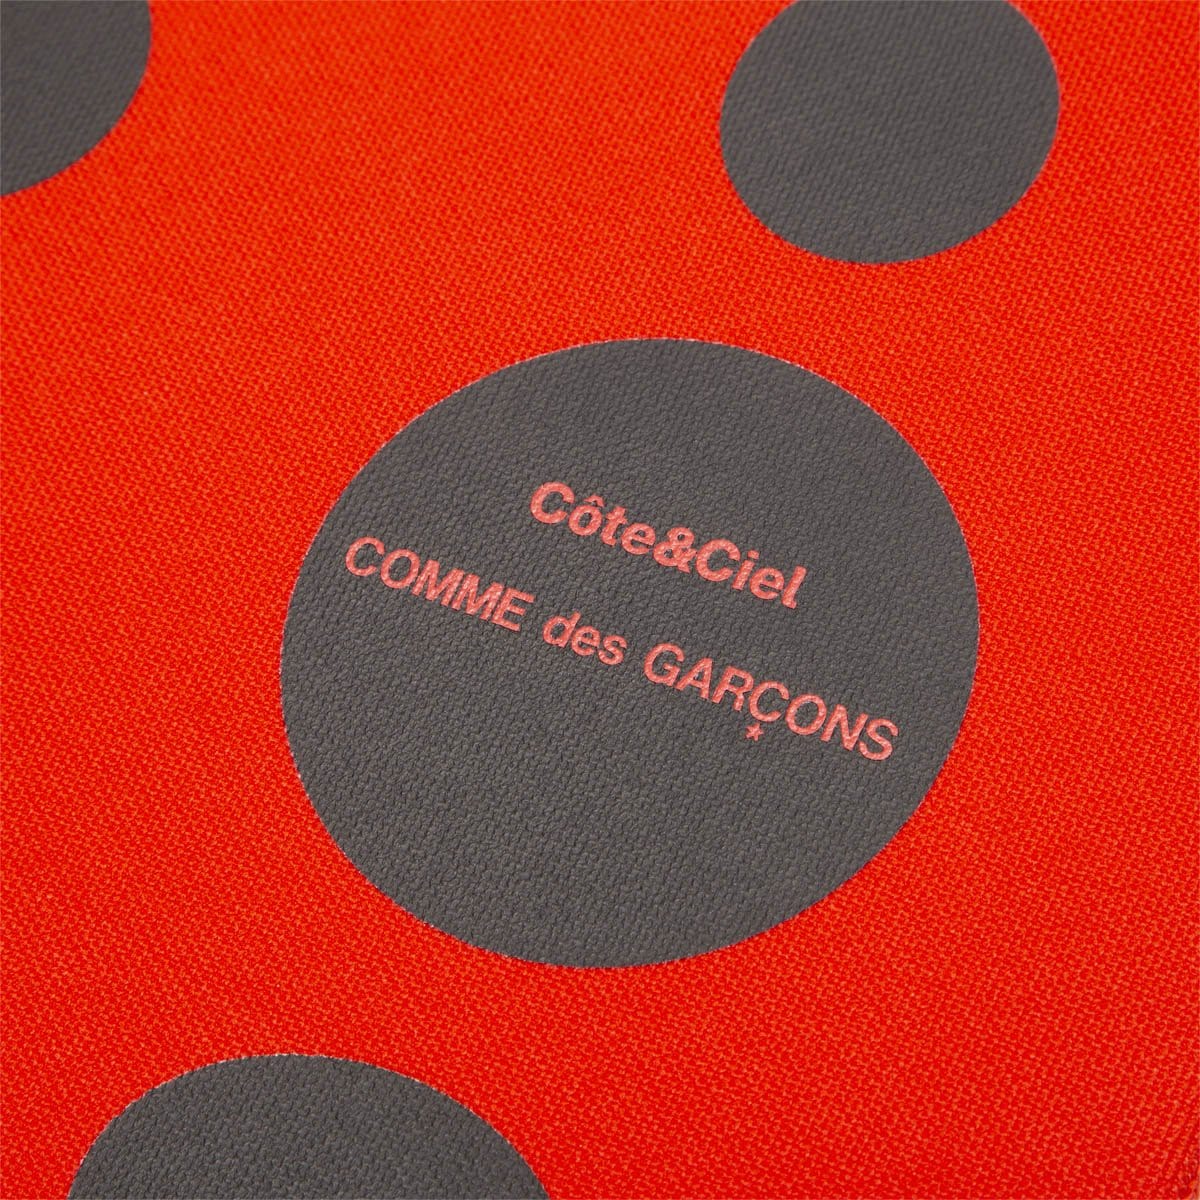 Comme Des Garçons Wallet Bags & Accessories RED / 15" x Cote & Ciel BLACK DOTS MACBOOK CASE 15"